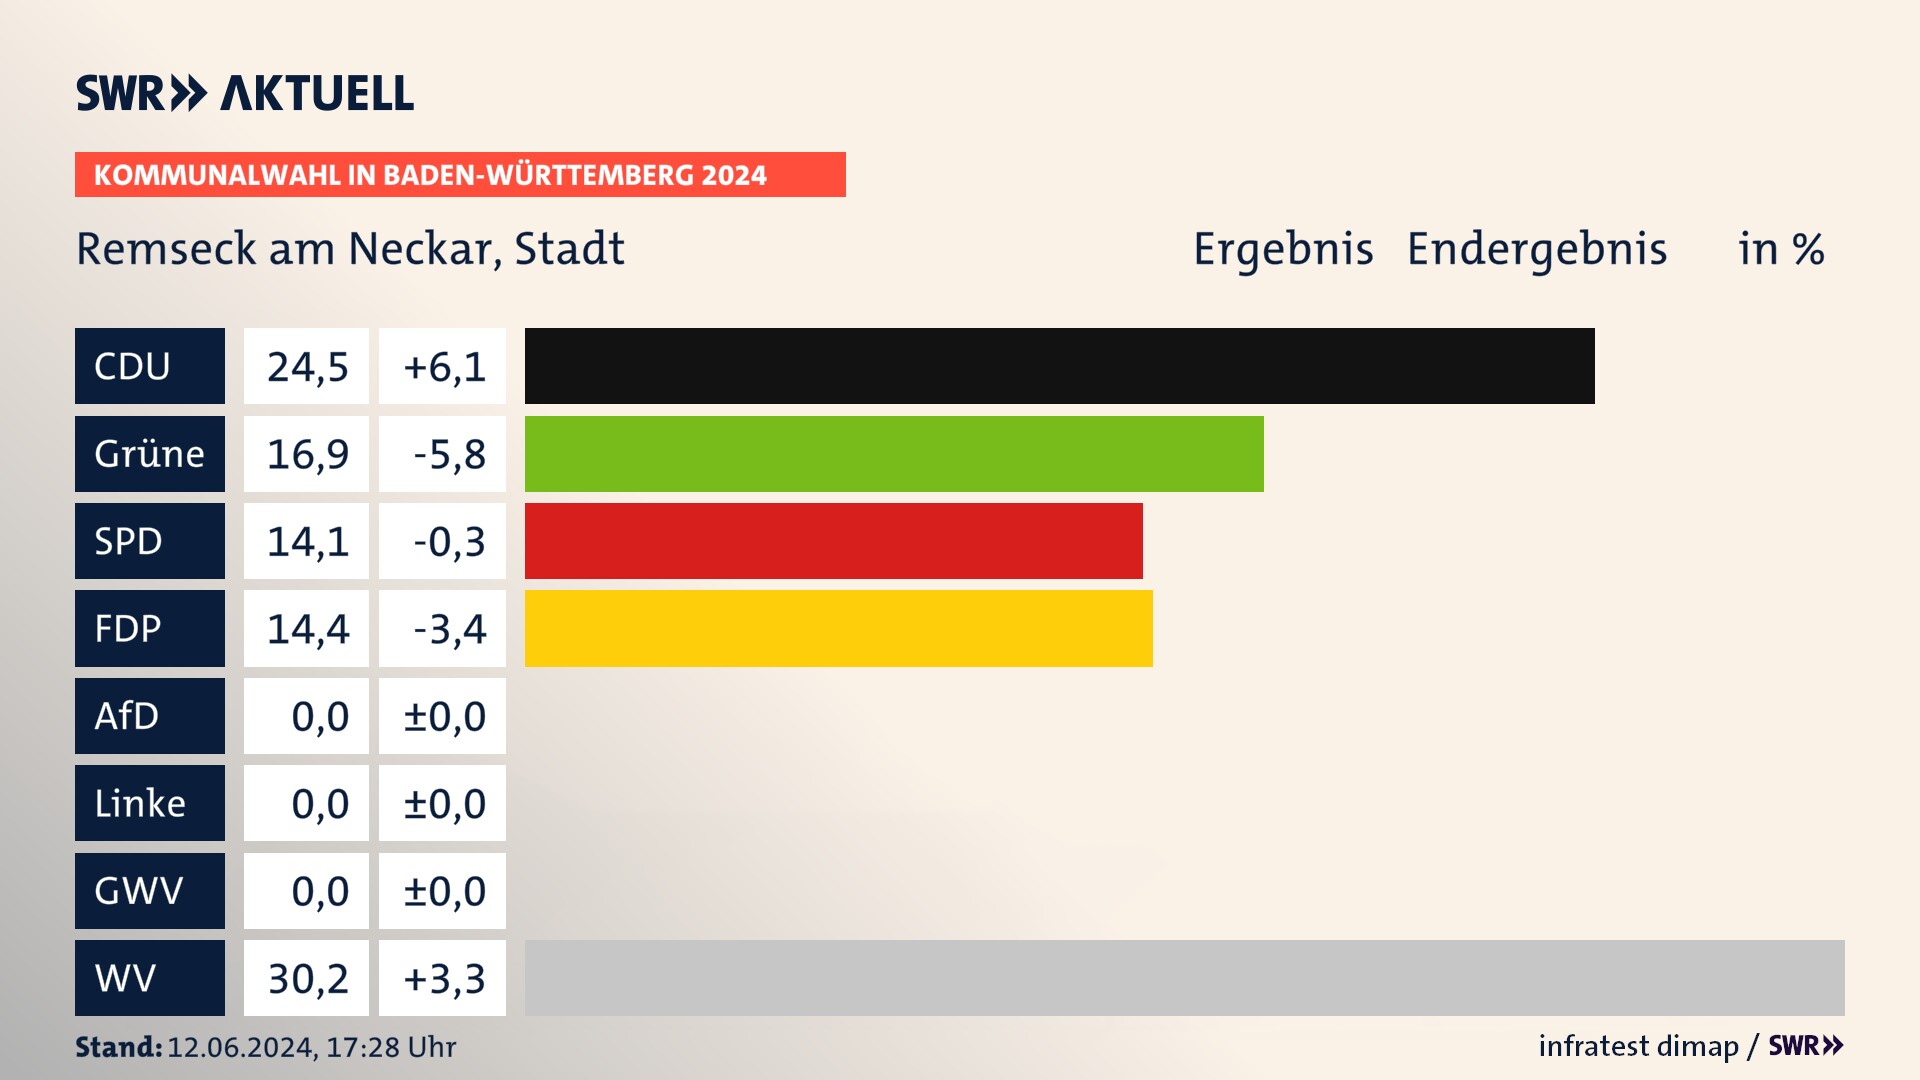 Kommunalwahl 2024 Endergebnis Zweitstimme für Remseck am Neckar. In Remseck am Neckar, Stadt erzielt die CDU 24,5 Prozent der gültigen  Stimmen. Die Grünen landen bei 16,9 Prozent. Die SPD erreicht 14,1 Prozent. Die FDP kommt auf 14,4 Prozent. Die Wählervereinigungen landen bei 30,2 Prozent.